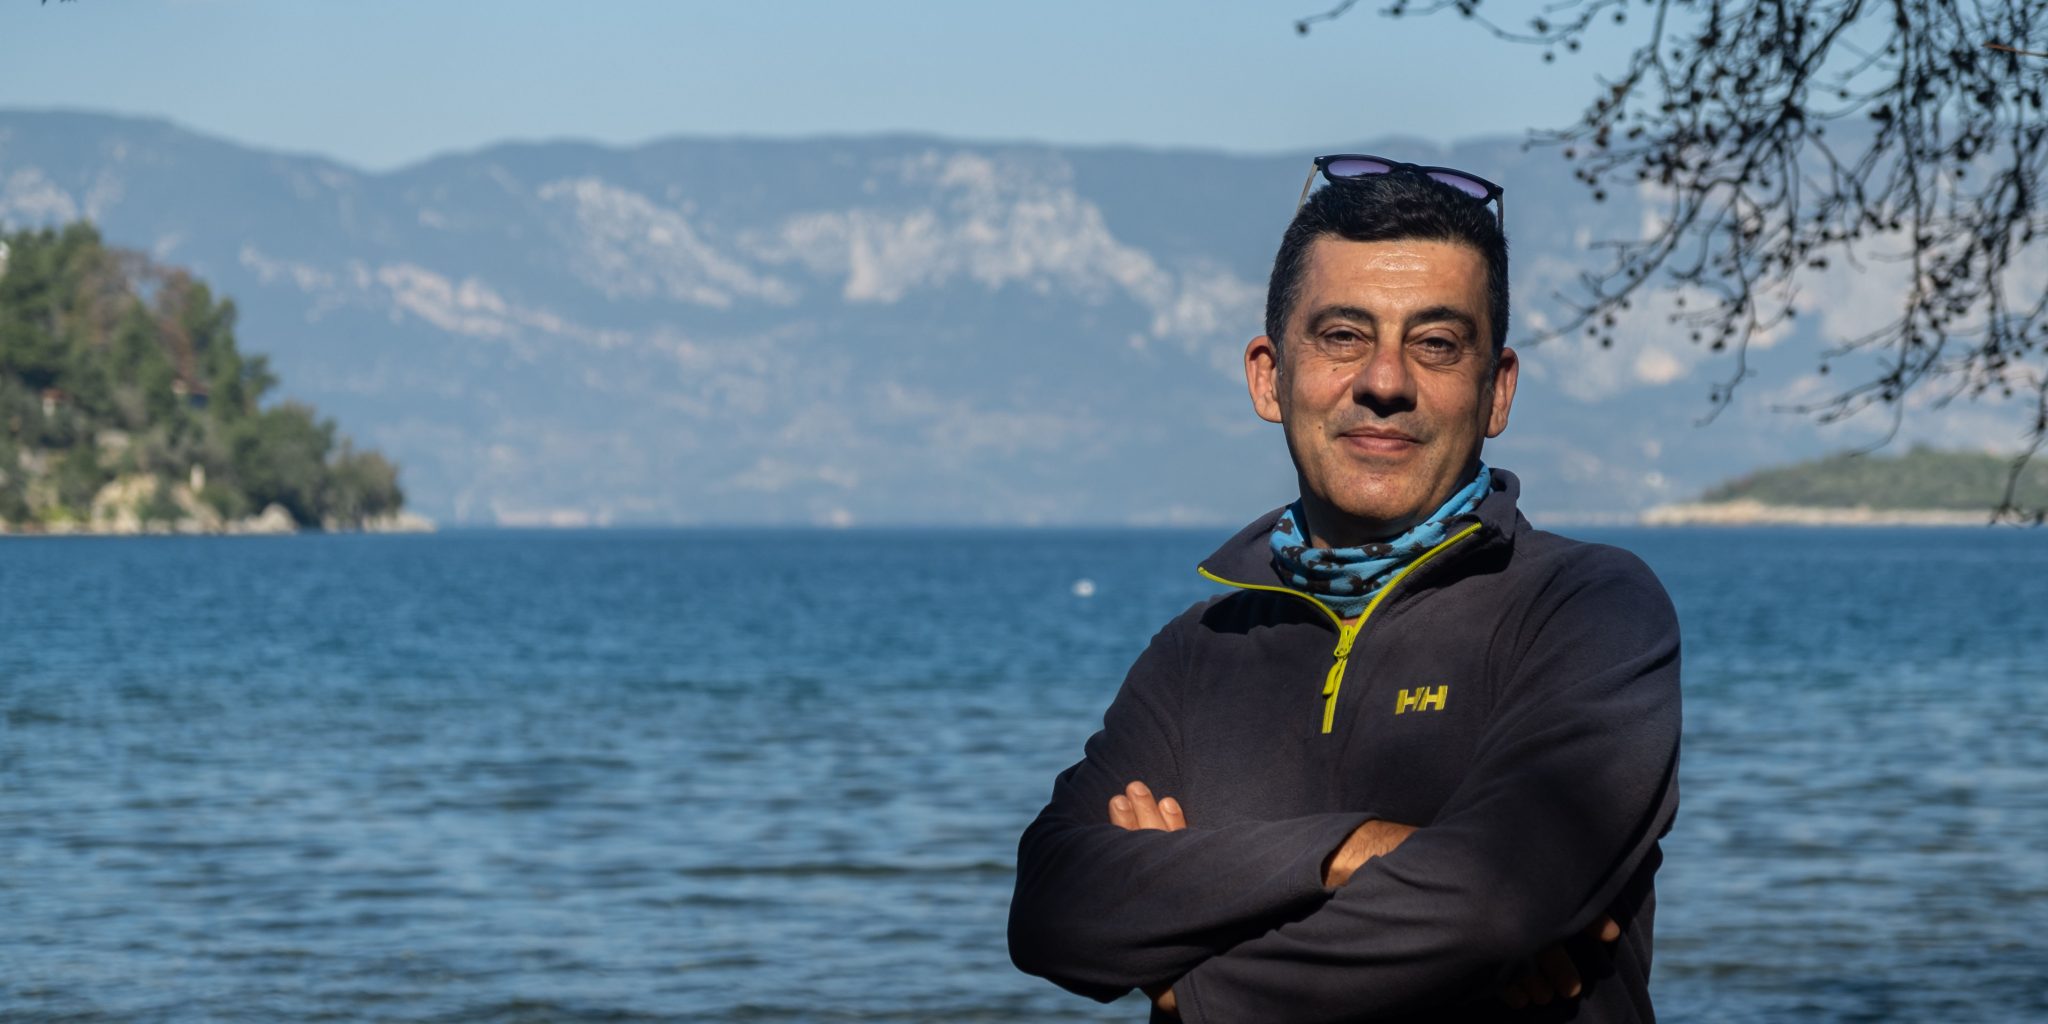 türkiye'nin deniz koruma kahramanı ve "yeşil nobel" sahibi zafer kızılkaya